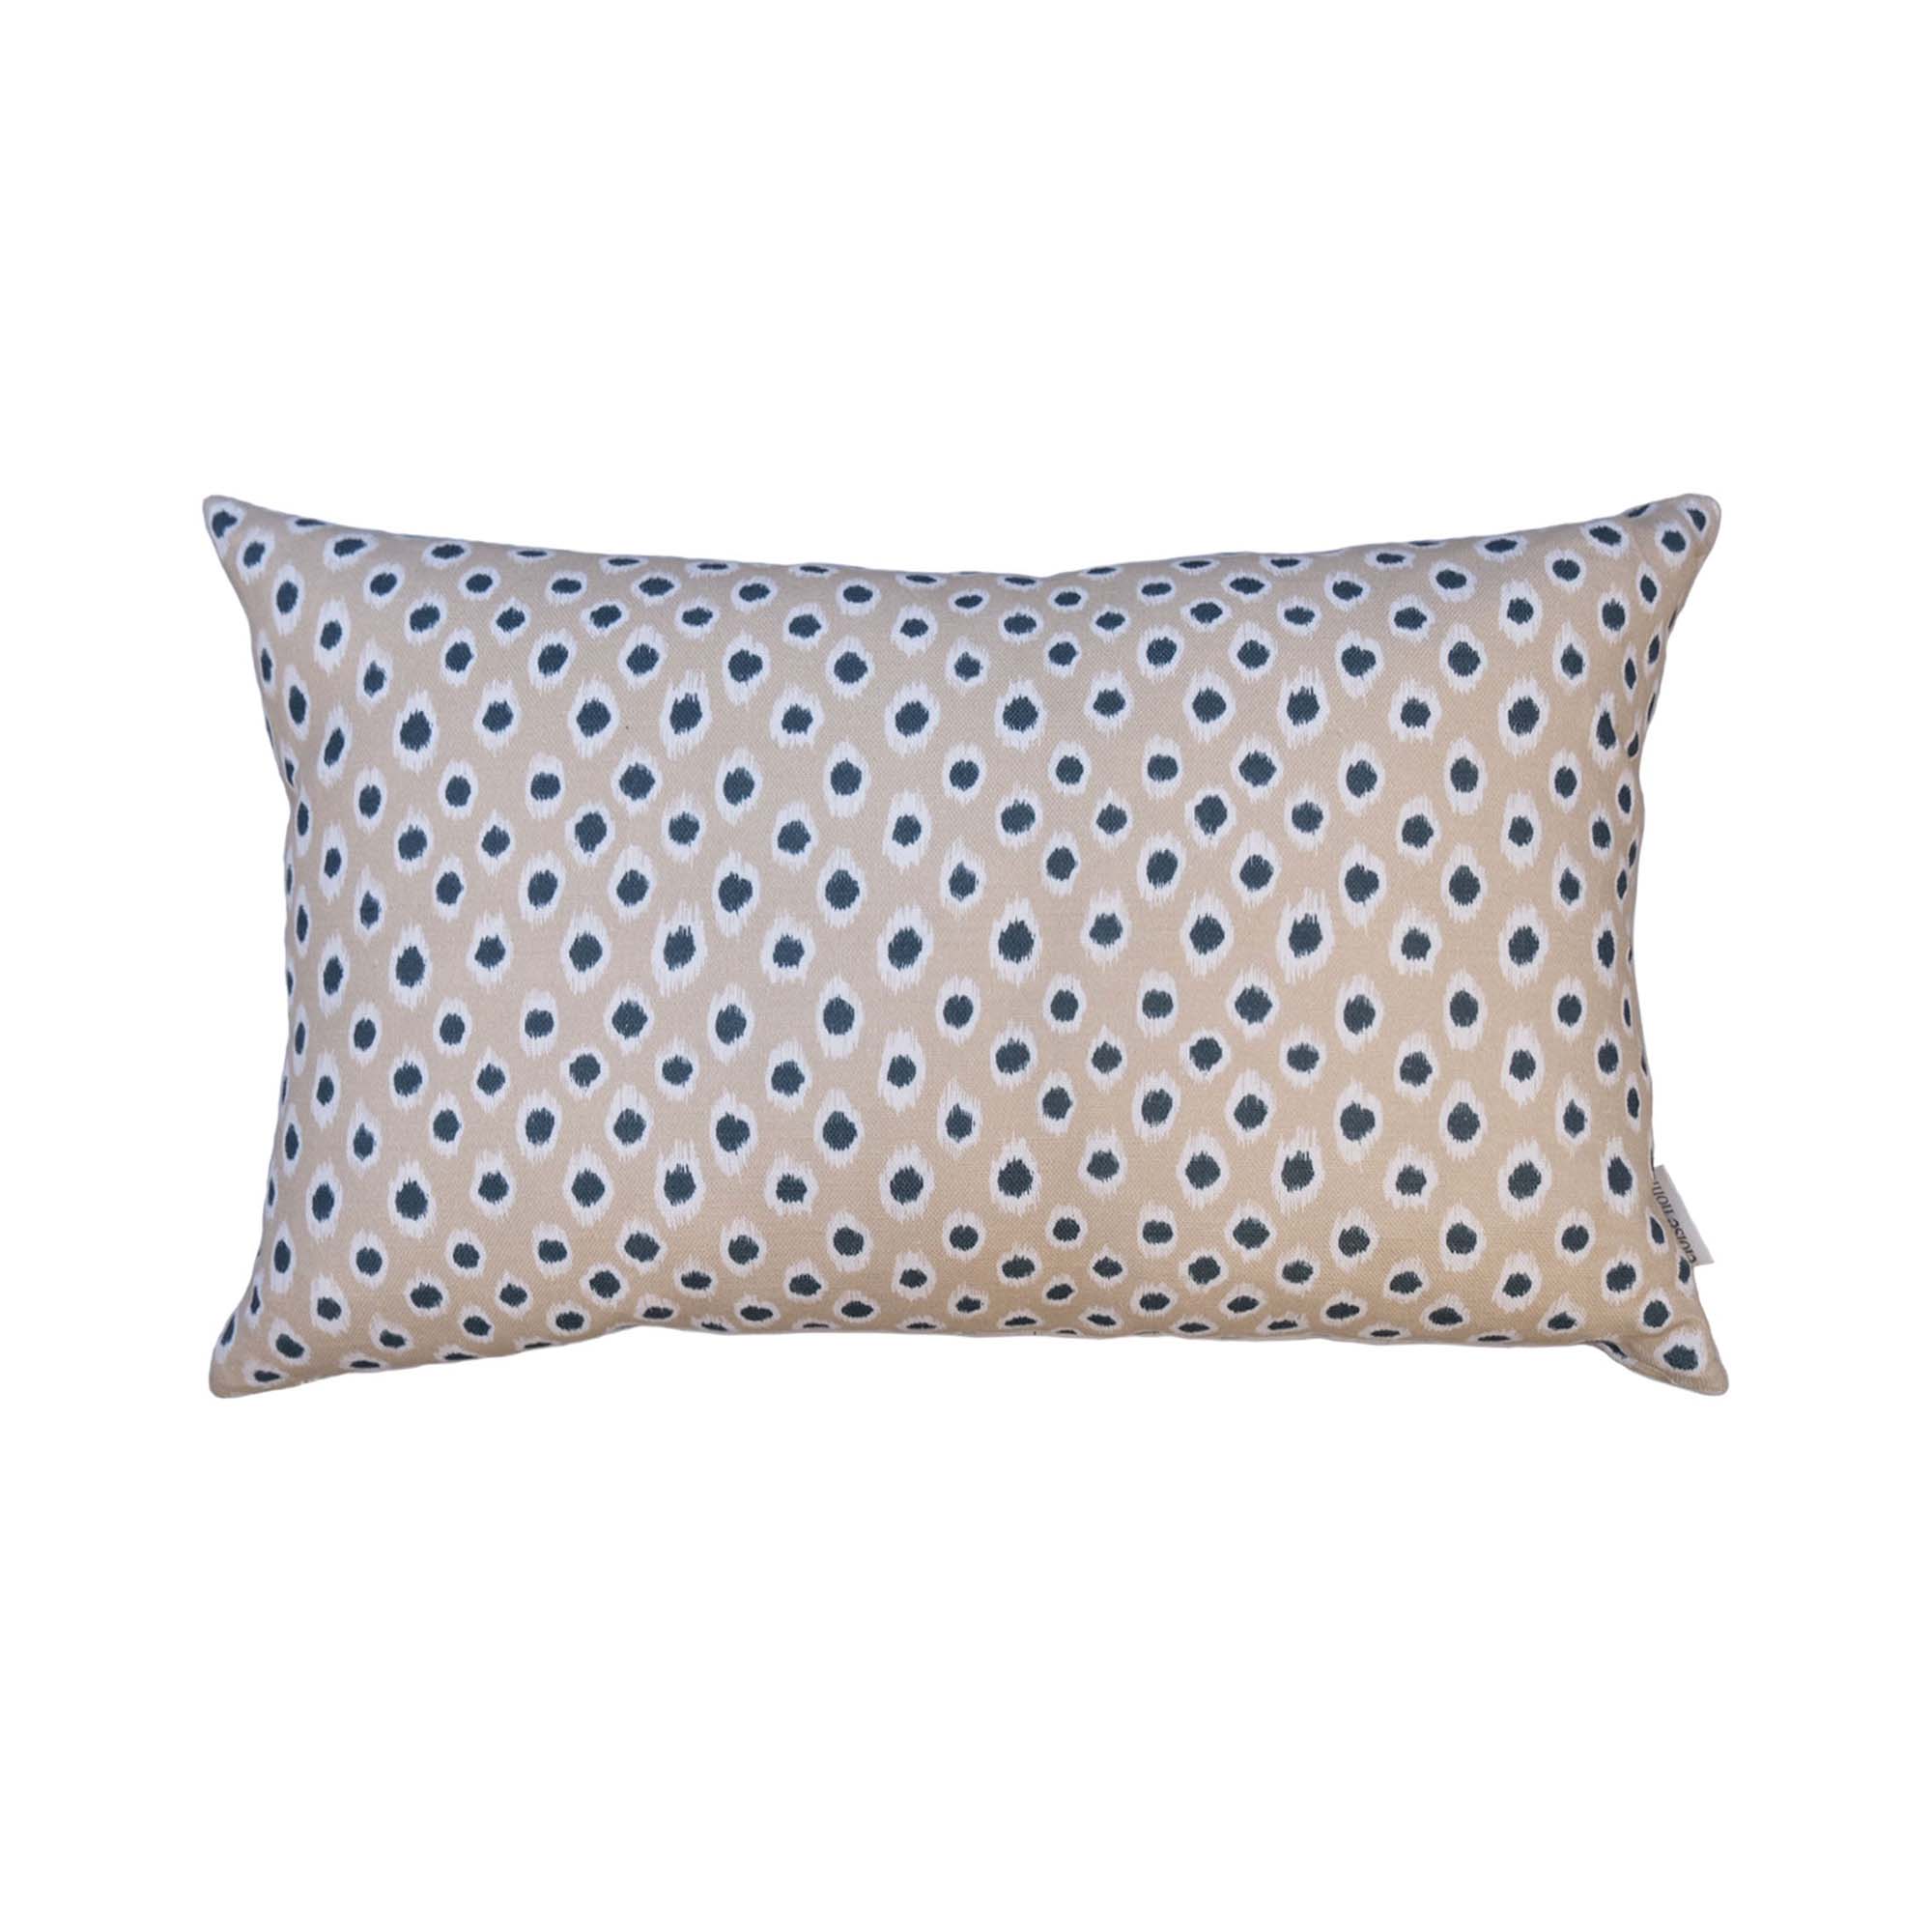 Polka Dot Lumbar Cushion | Cream & Navy